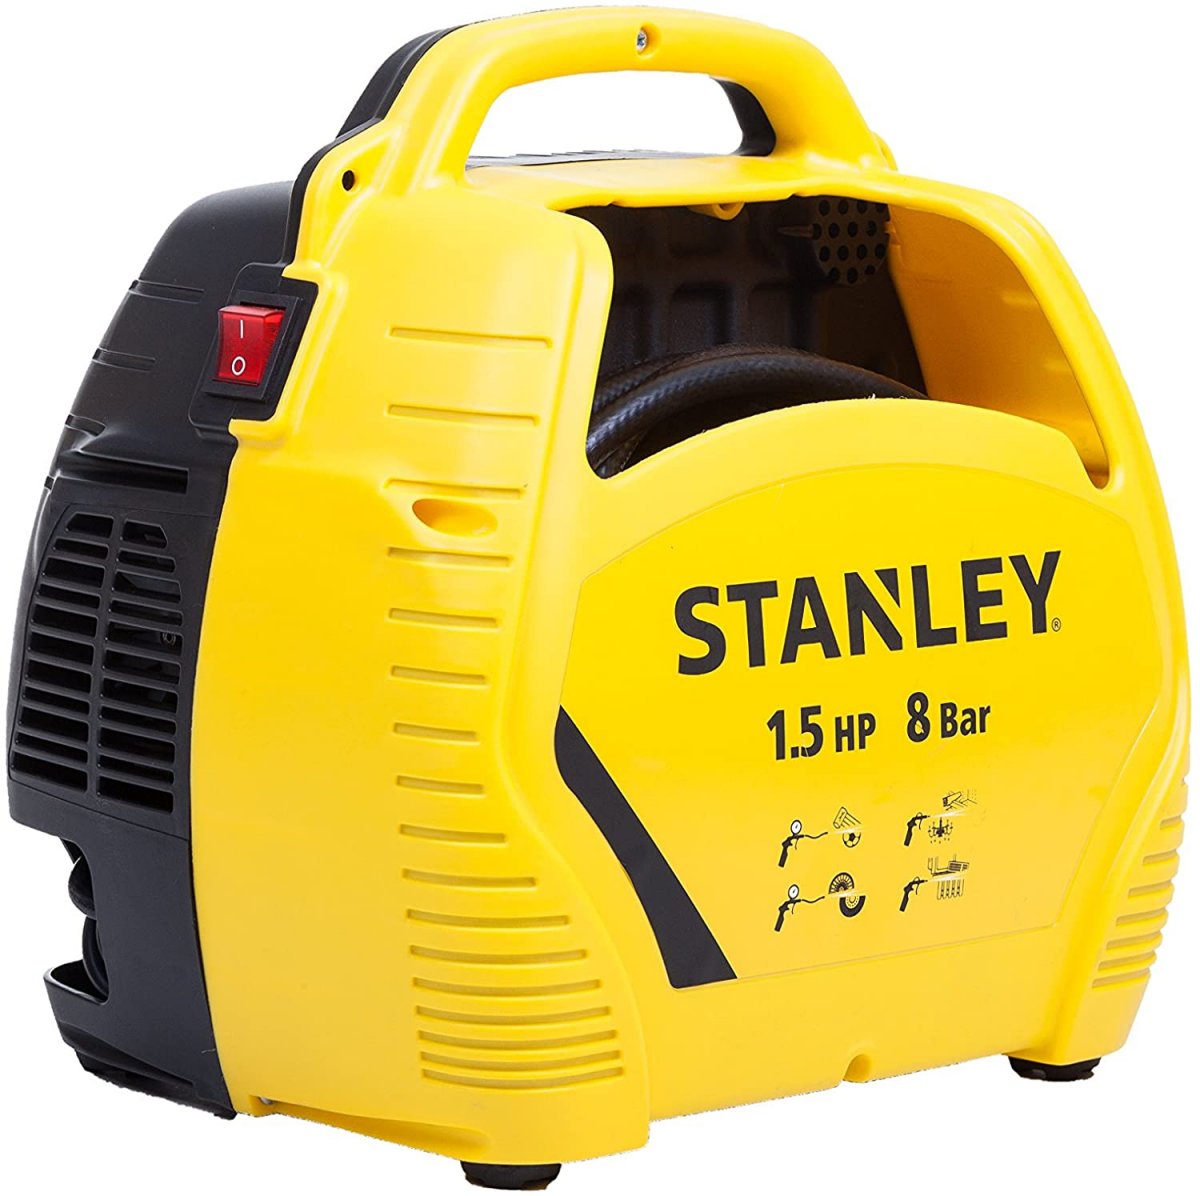 Stanley Compressore d'aria con acessori, 1.5 HP fino a 8 Bar, 1100 W, 230 V, Rumorosità 97 dB, Giallo/Nero 